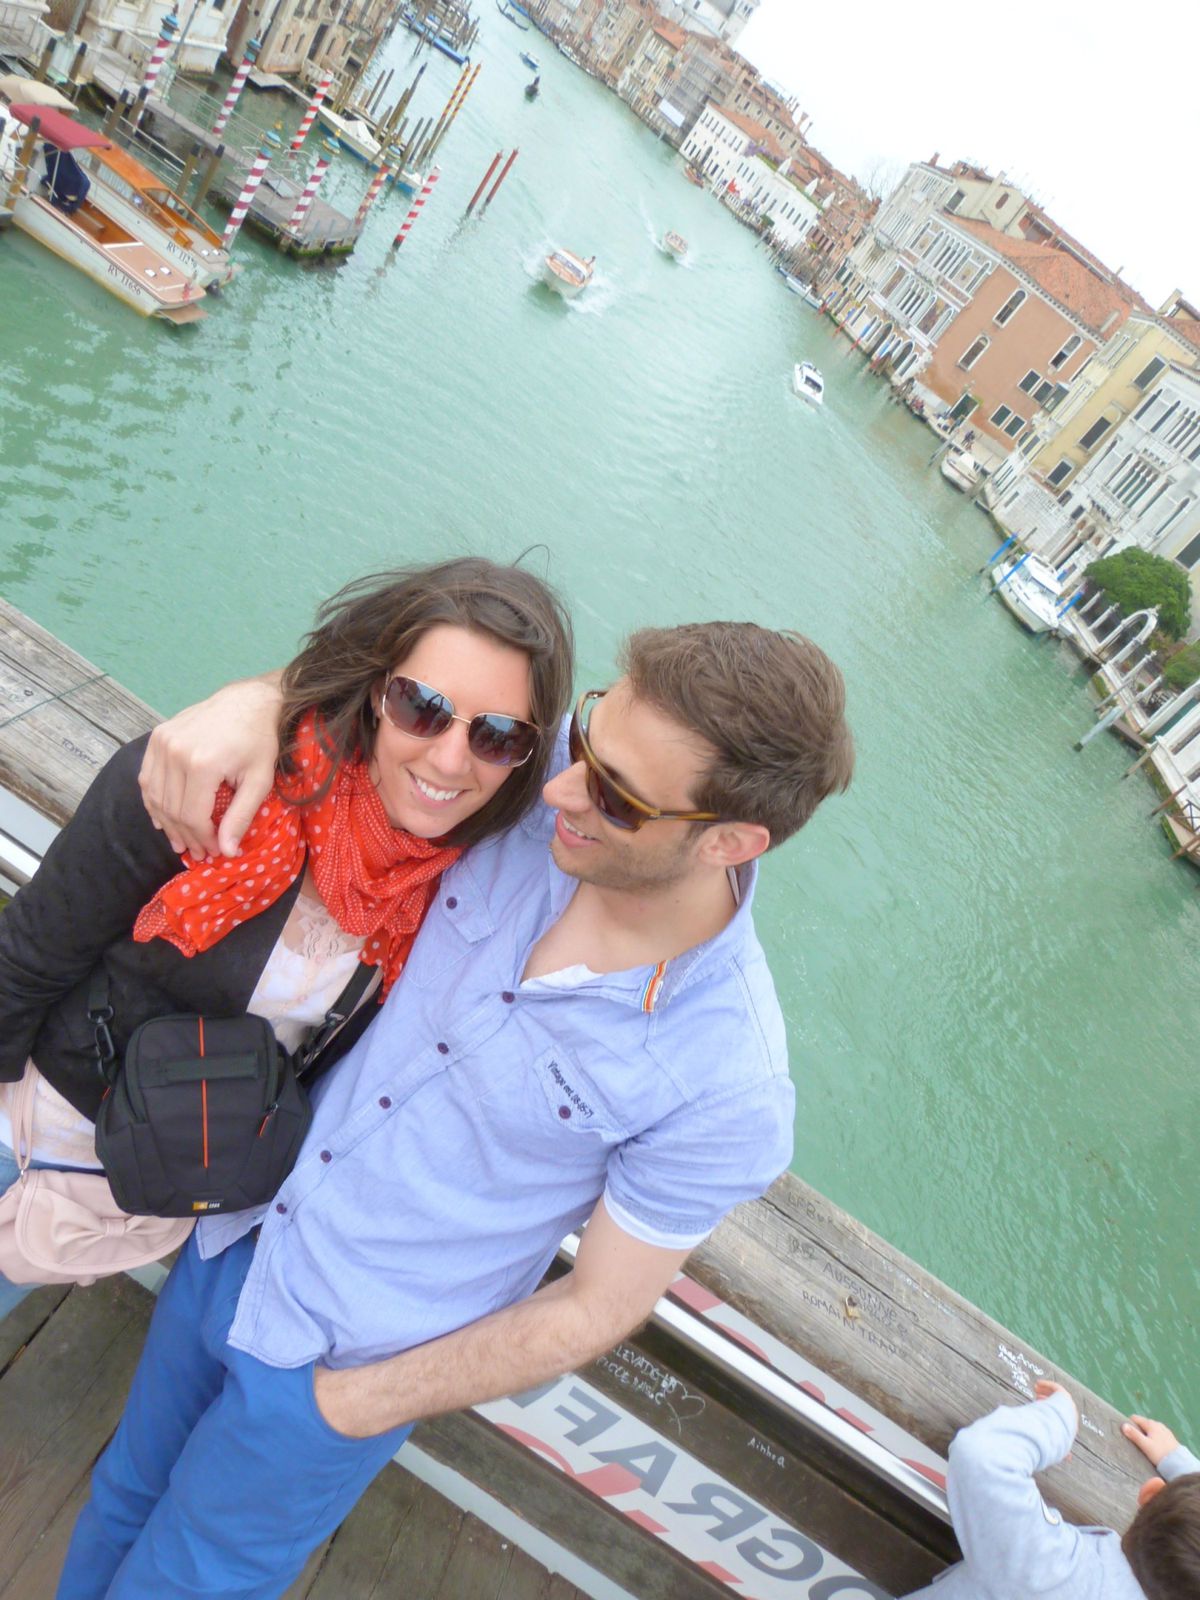 Italie : Venise - Murano - Burano